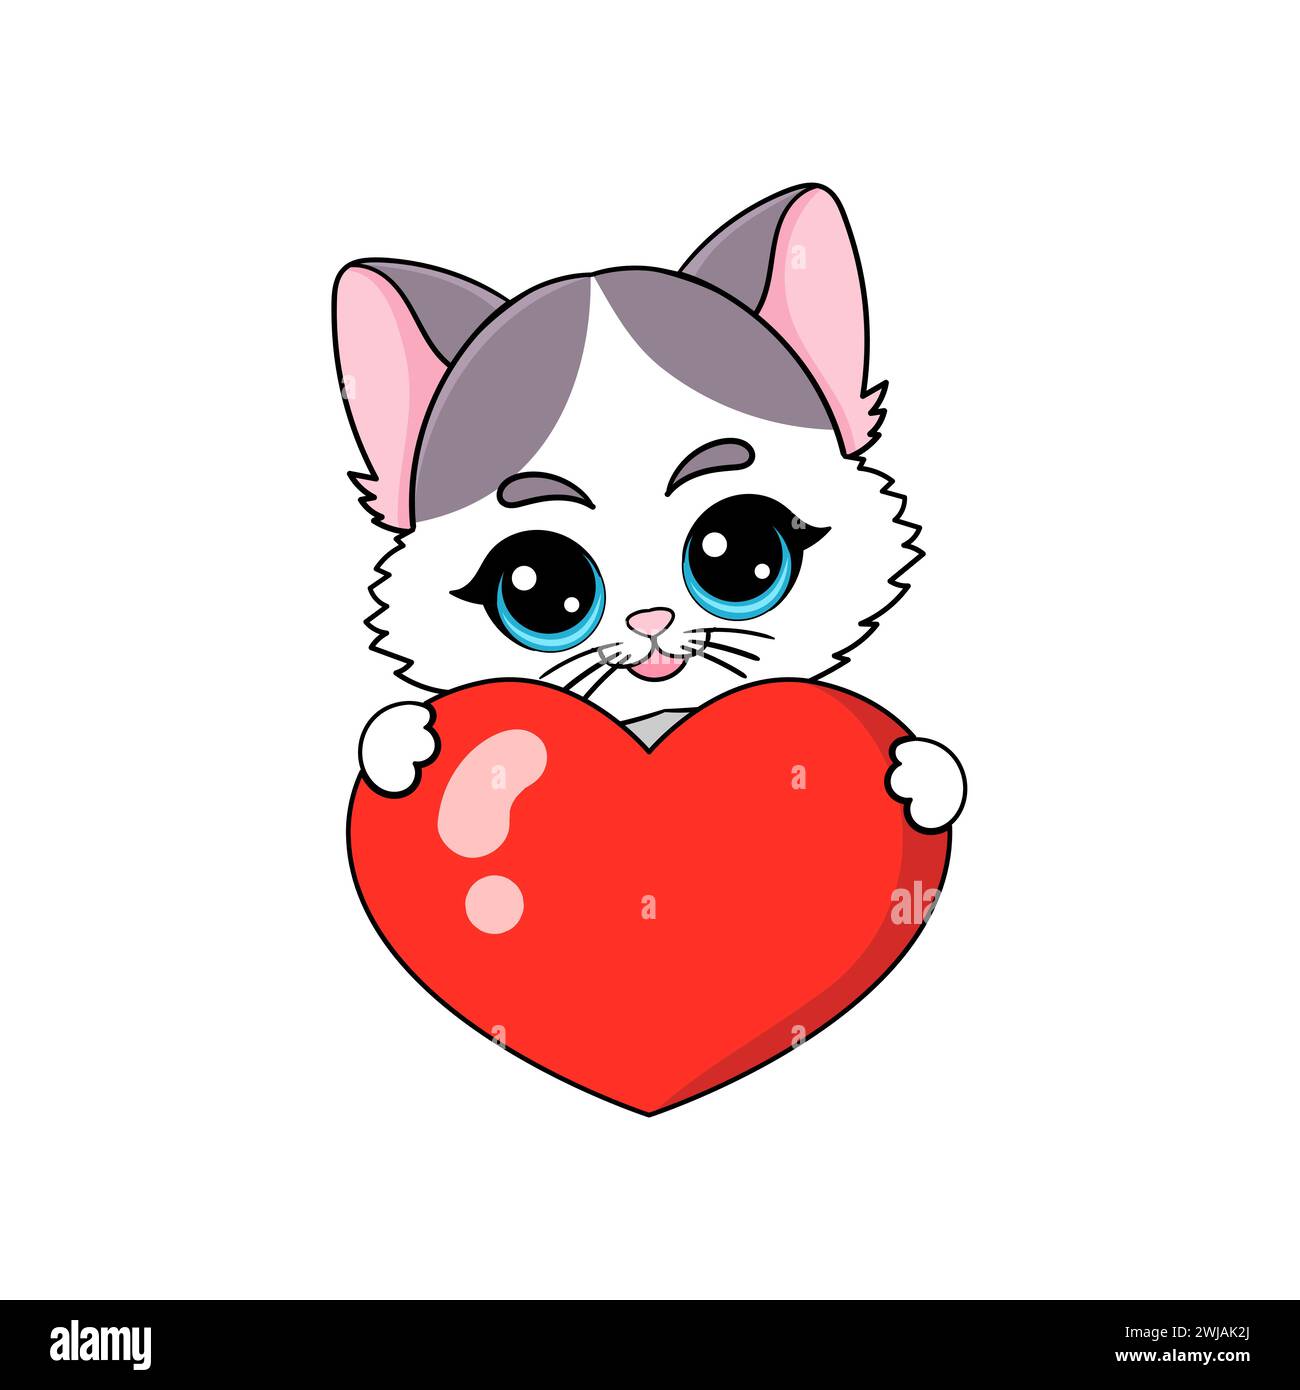 Mignon chaton tient un cœur rouge dans ses pattes. Image isolée sur fond blanc. Pour la conception de cartes de Saint-Valentin, impressions, affiches, autocollants, cartes Illustration de Vecteur